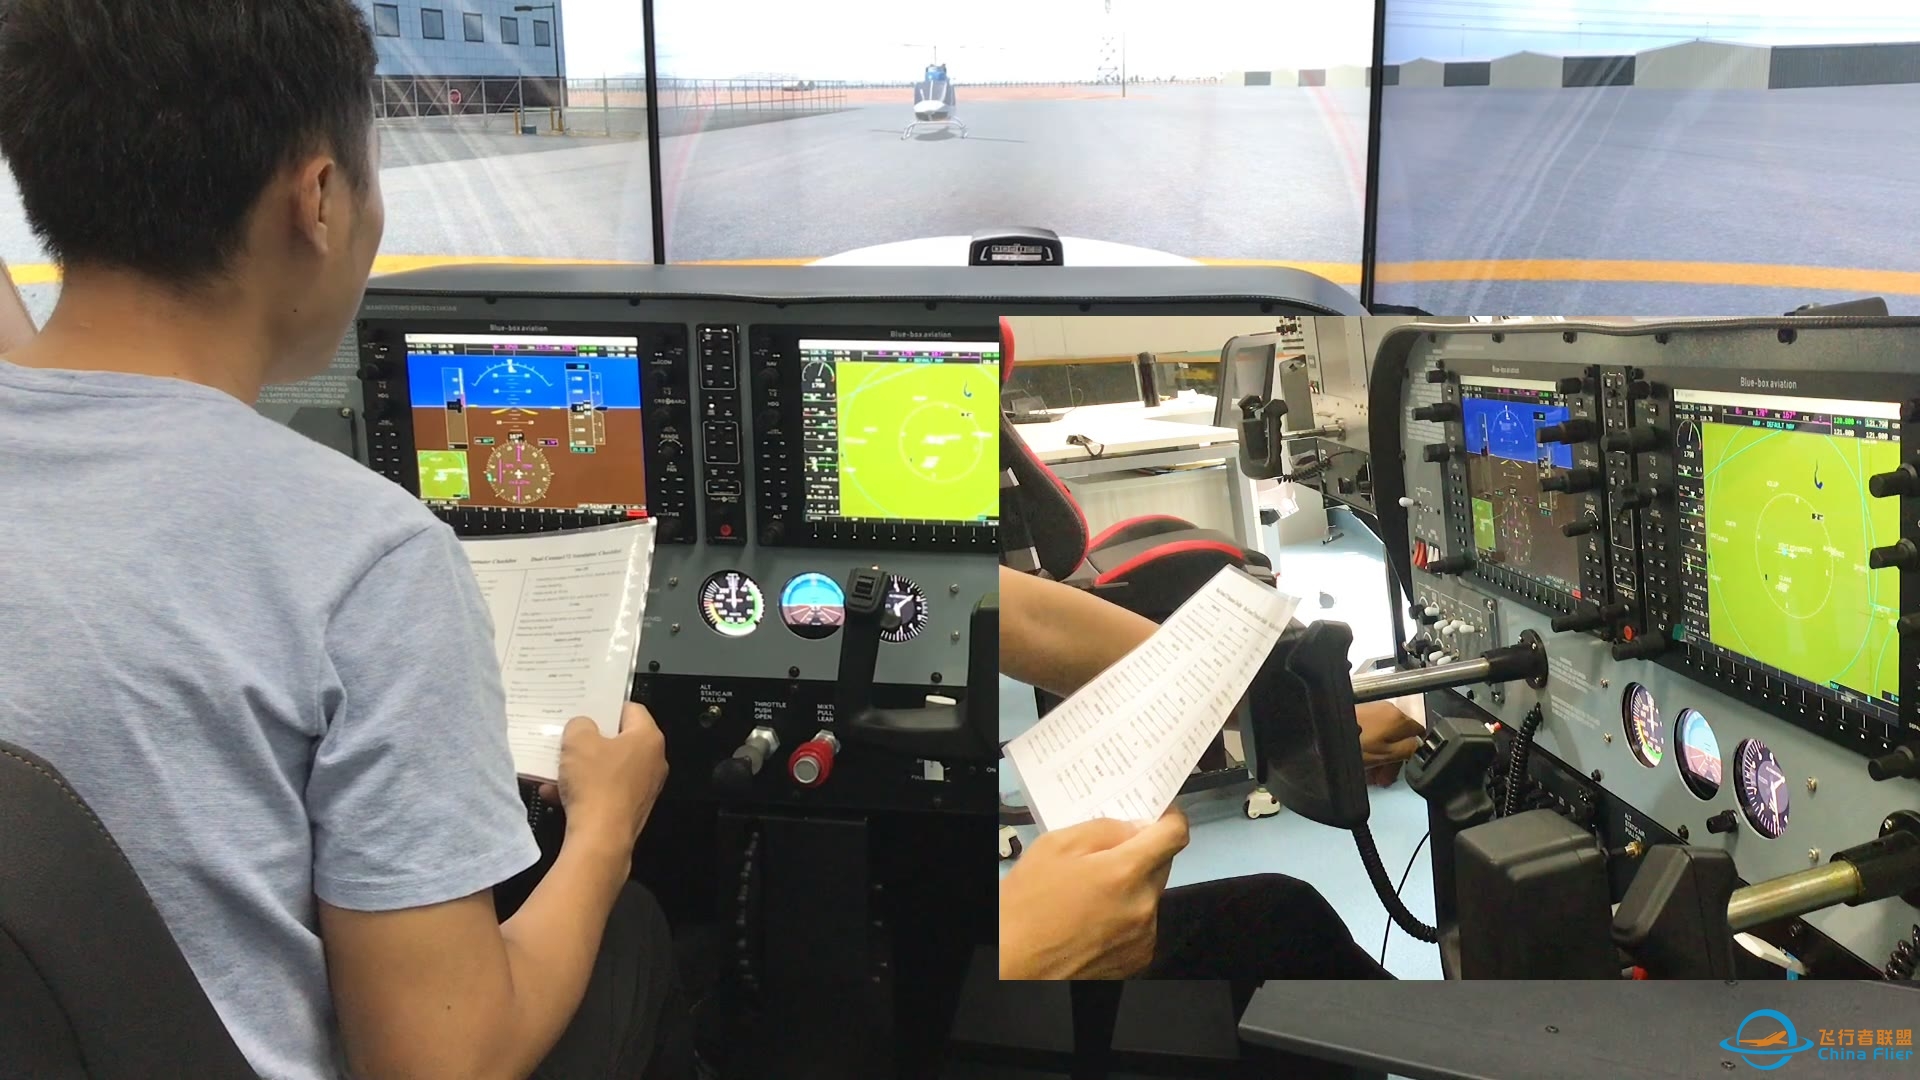 简单的飞行模拟线路介绍，基于Cessna172以及checklist。-7836 